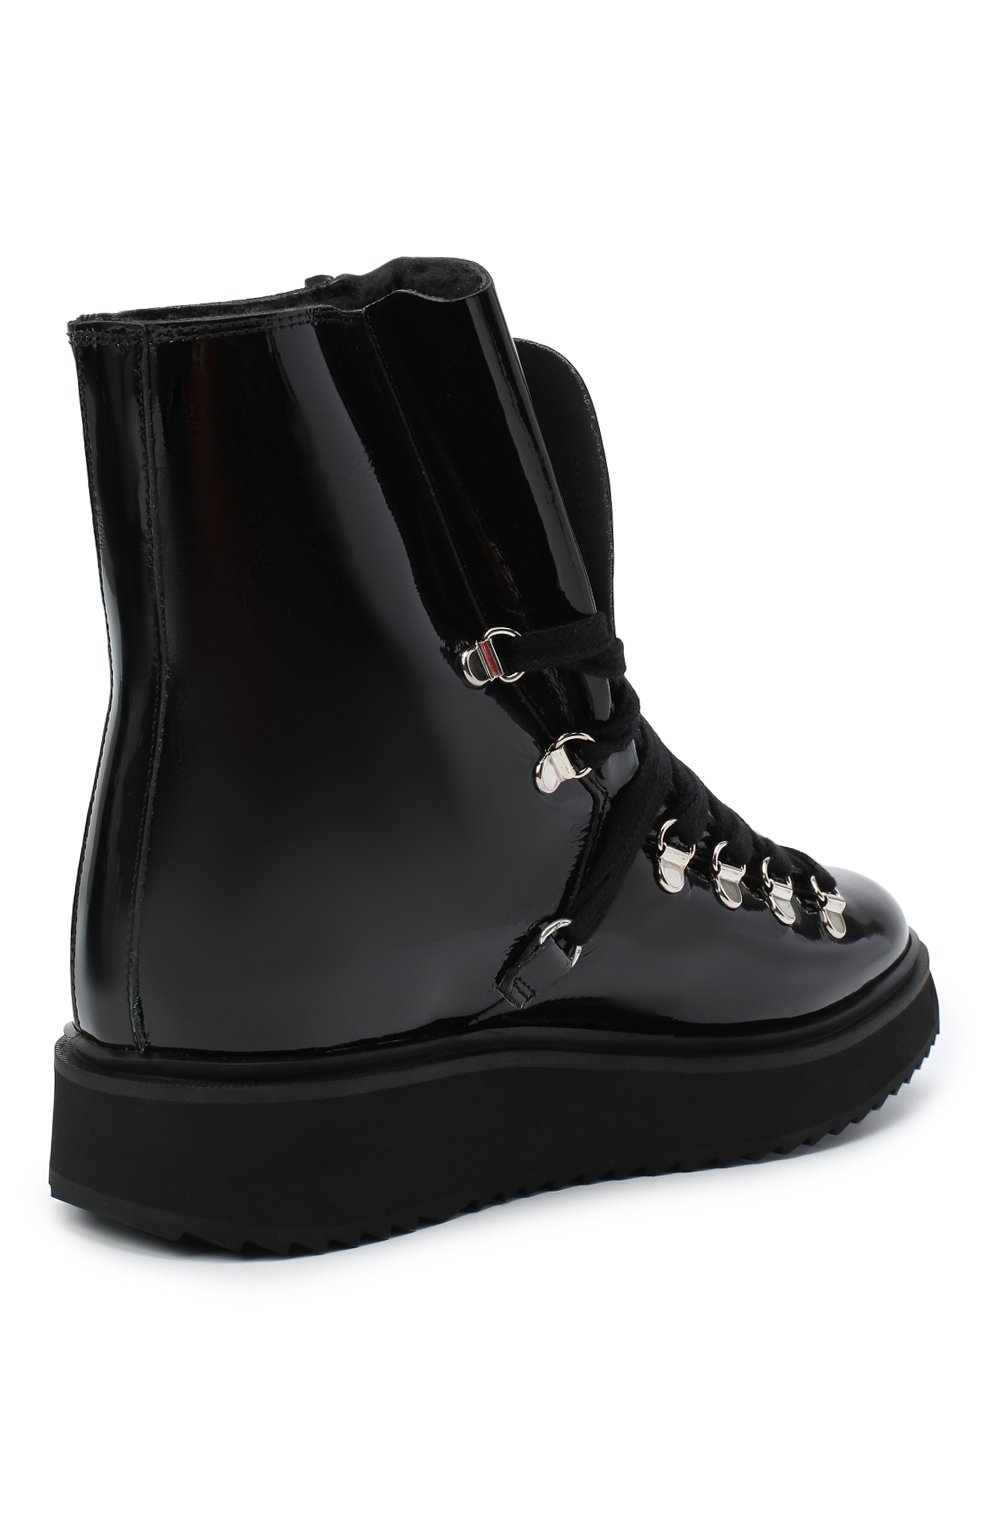 Кожаные ботинки Alaska Kenzo FA62BT301L64, цвет чёрный, размер 36 - фото 4